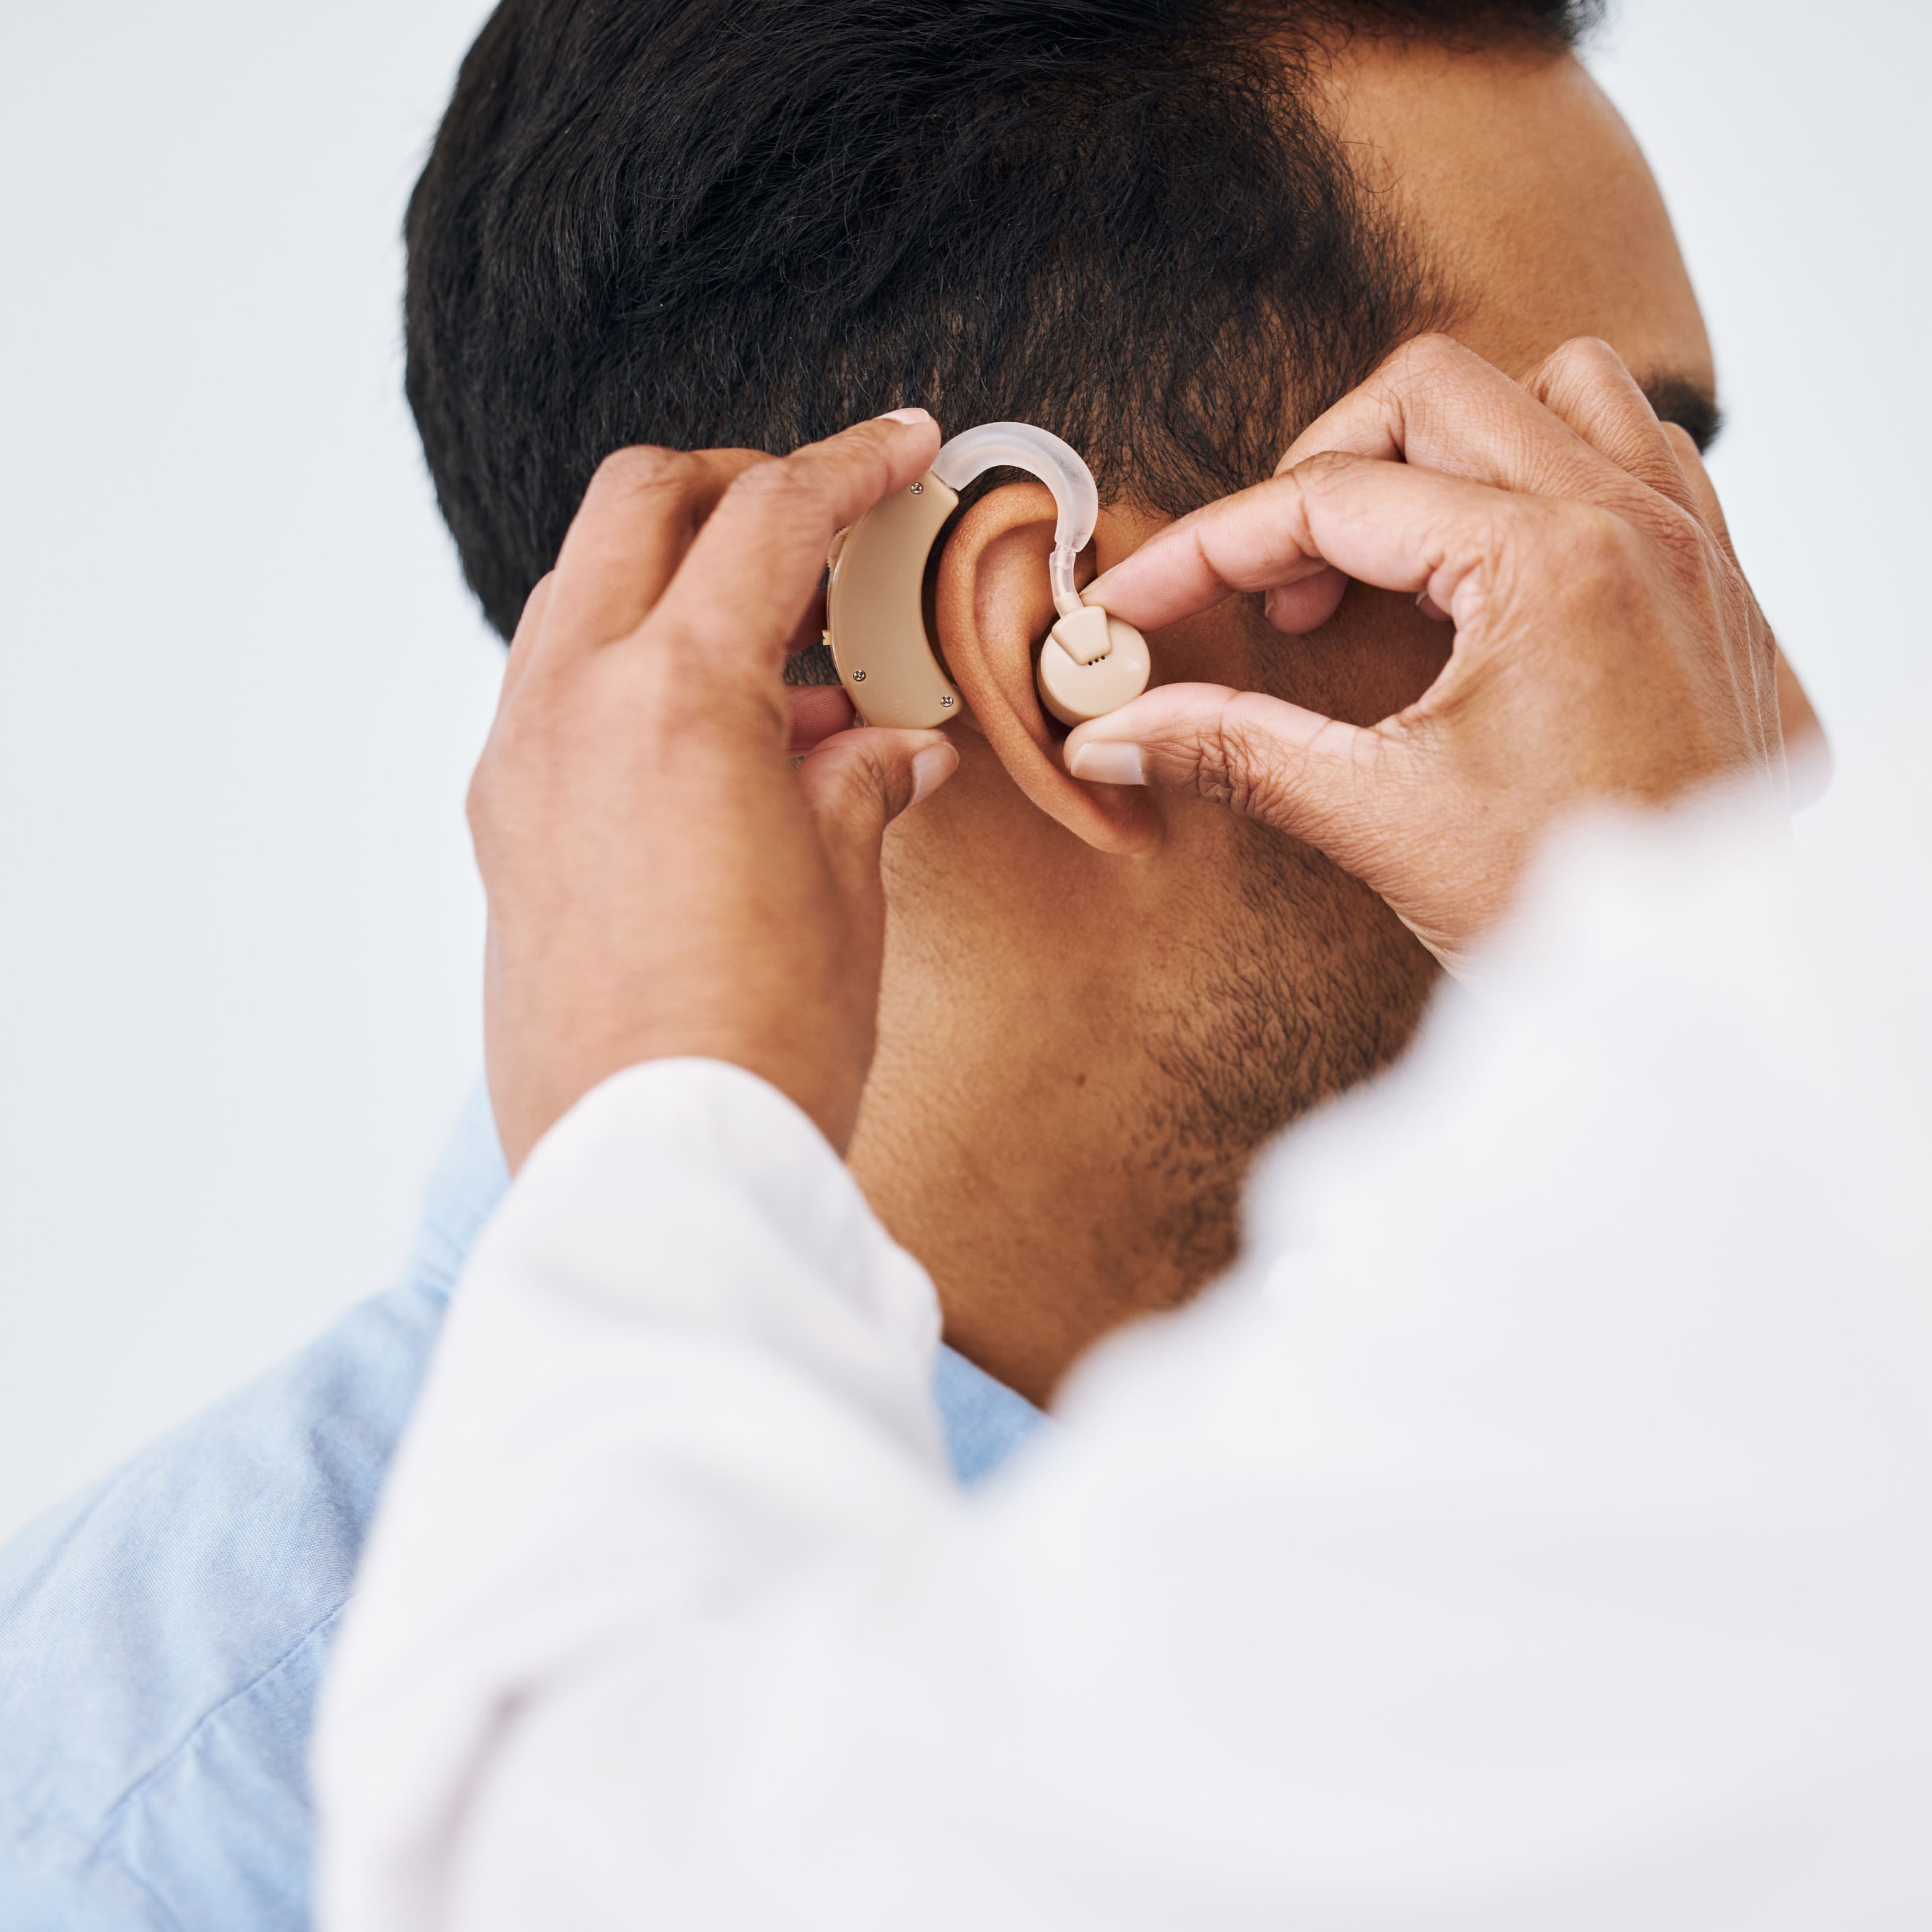 Rendez-vous contrôle aides auditives